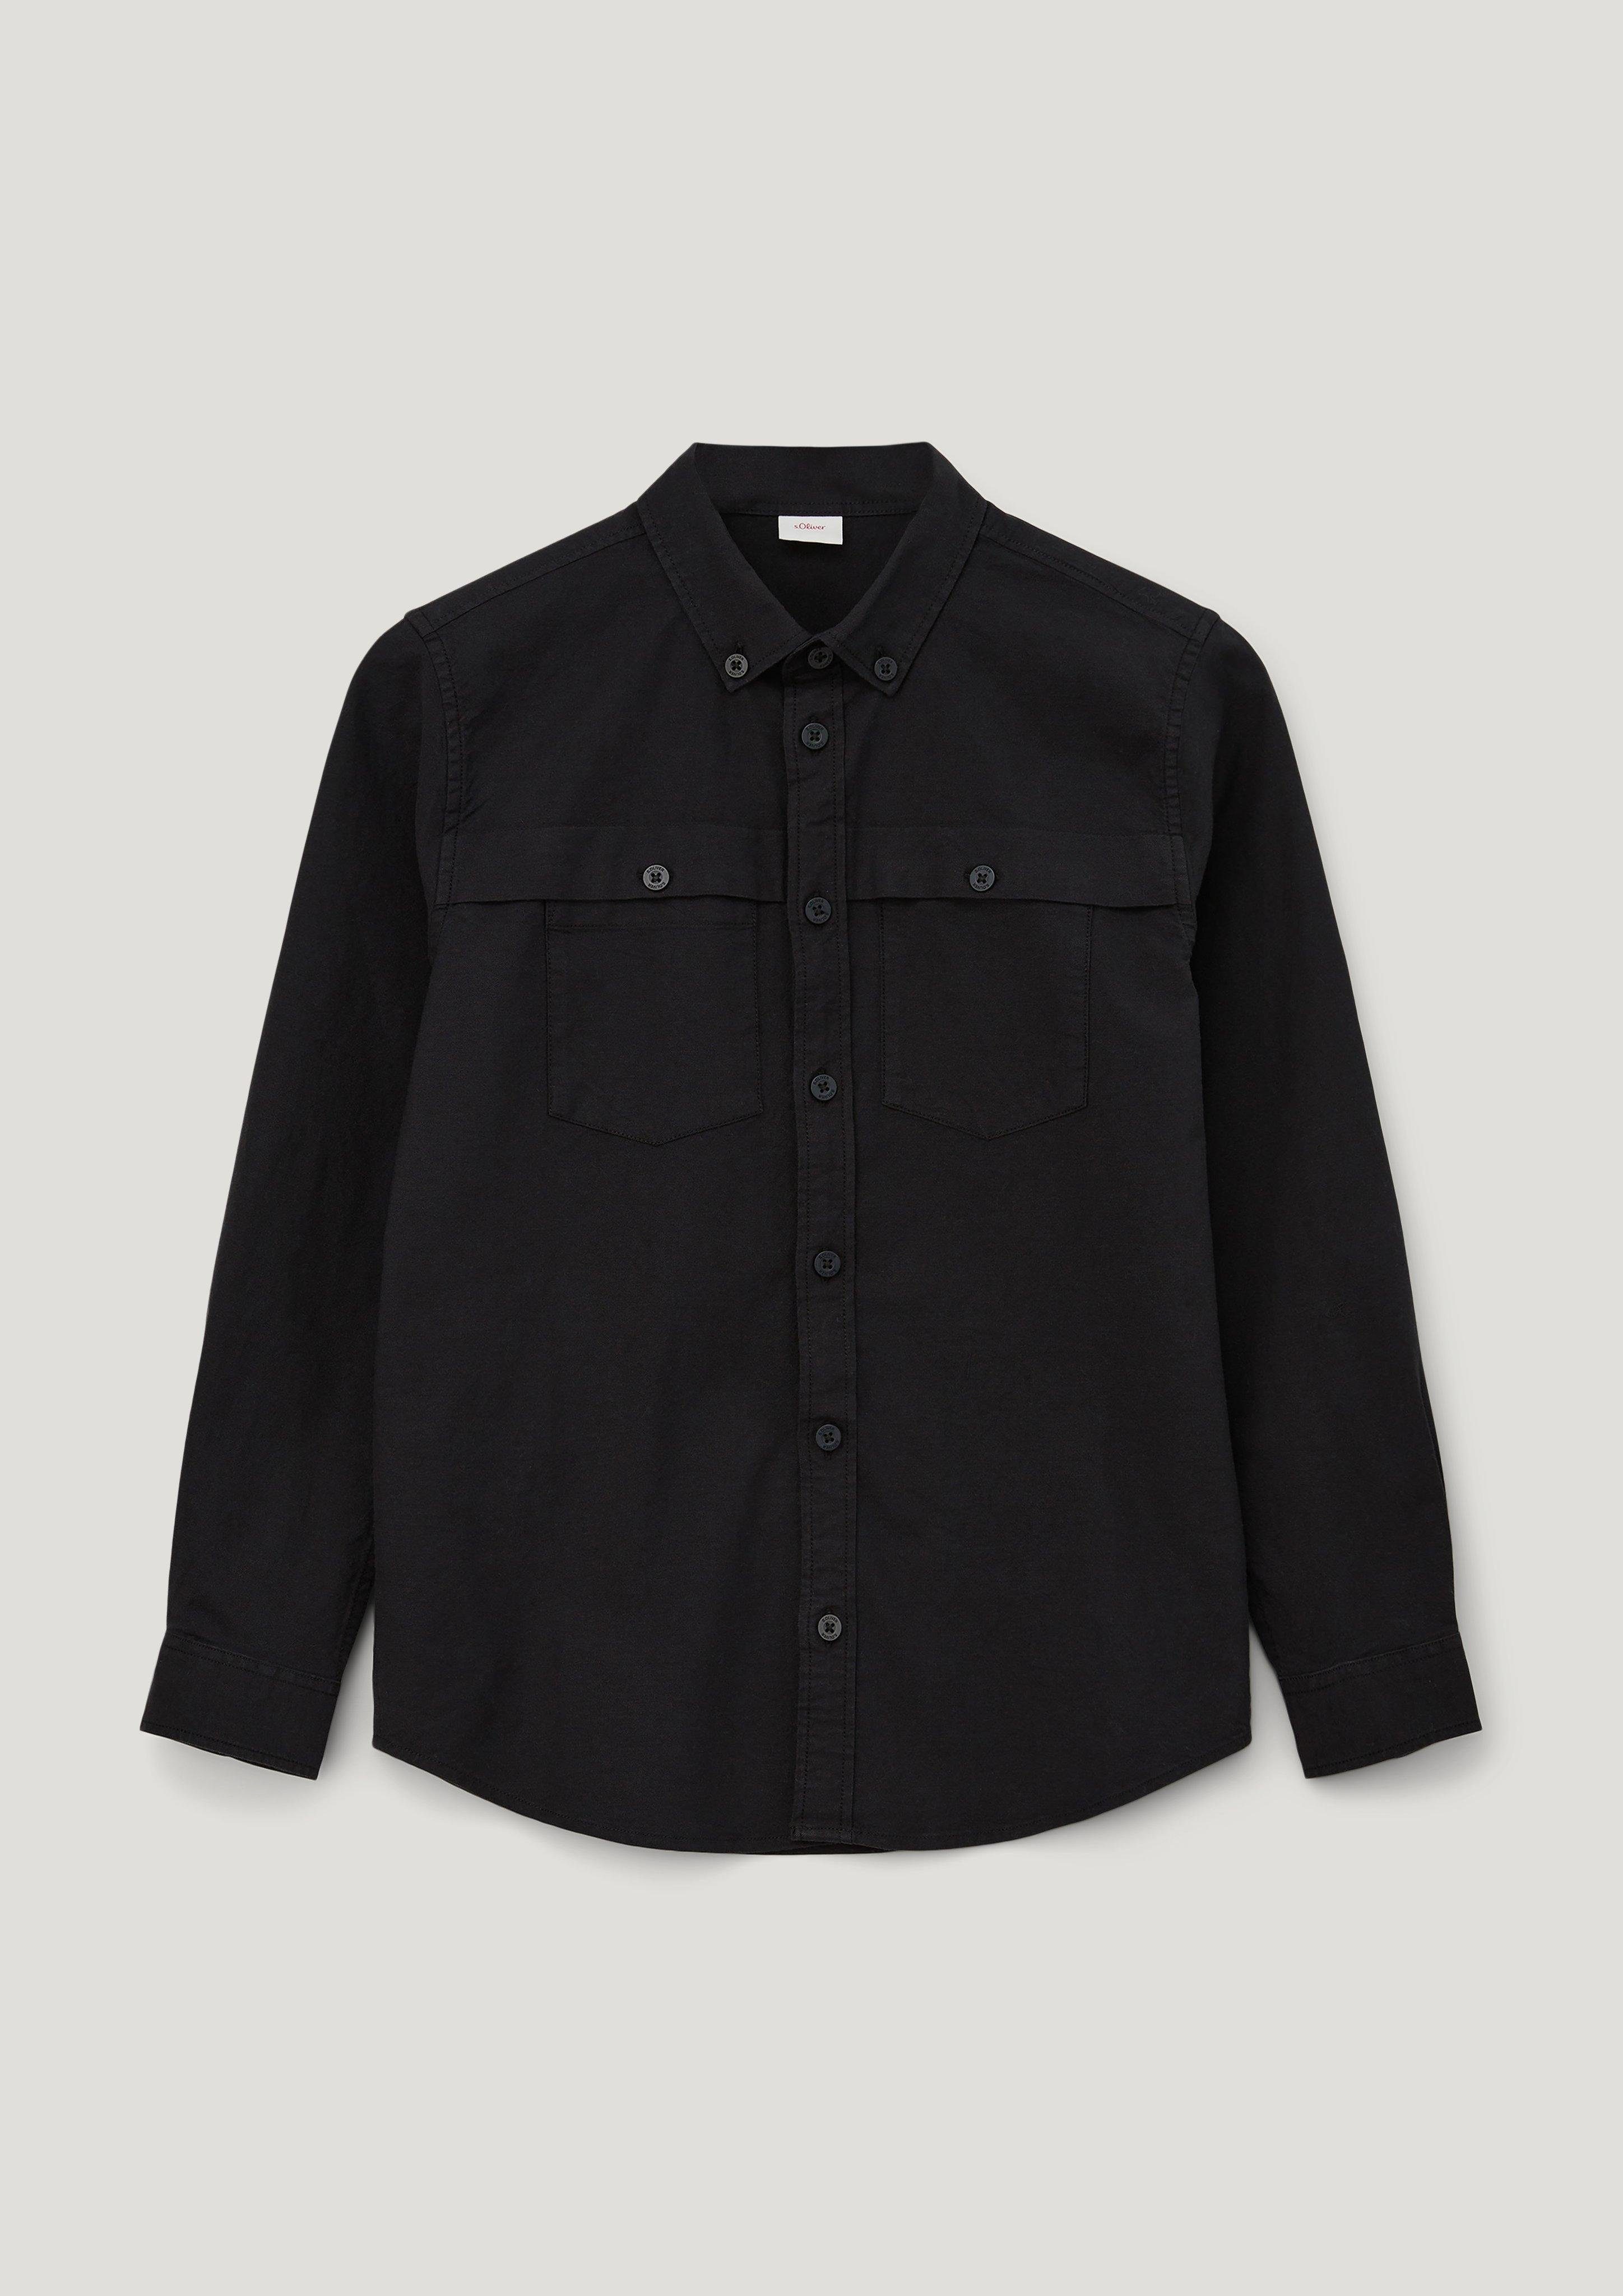 Langarmhemd schwarz mit s.Oliver Pattentaschen Oxford-Hemd